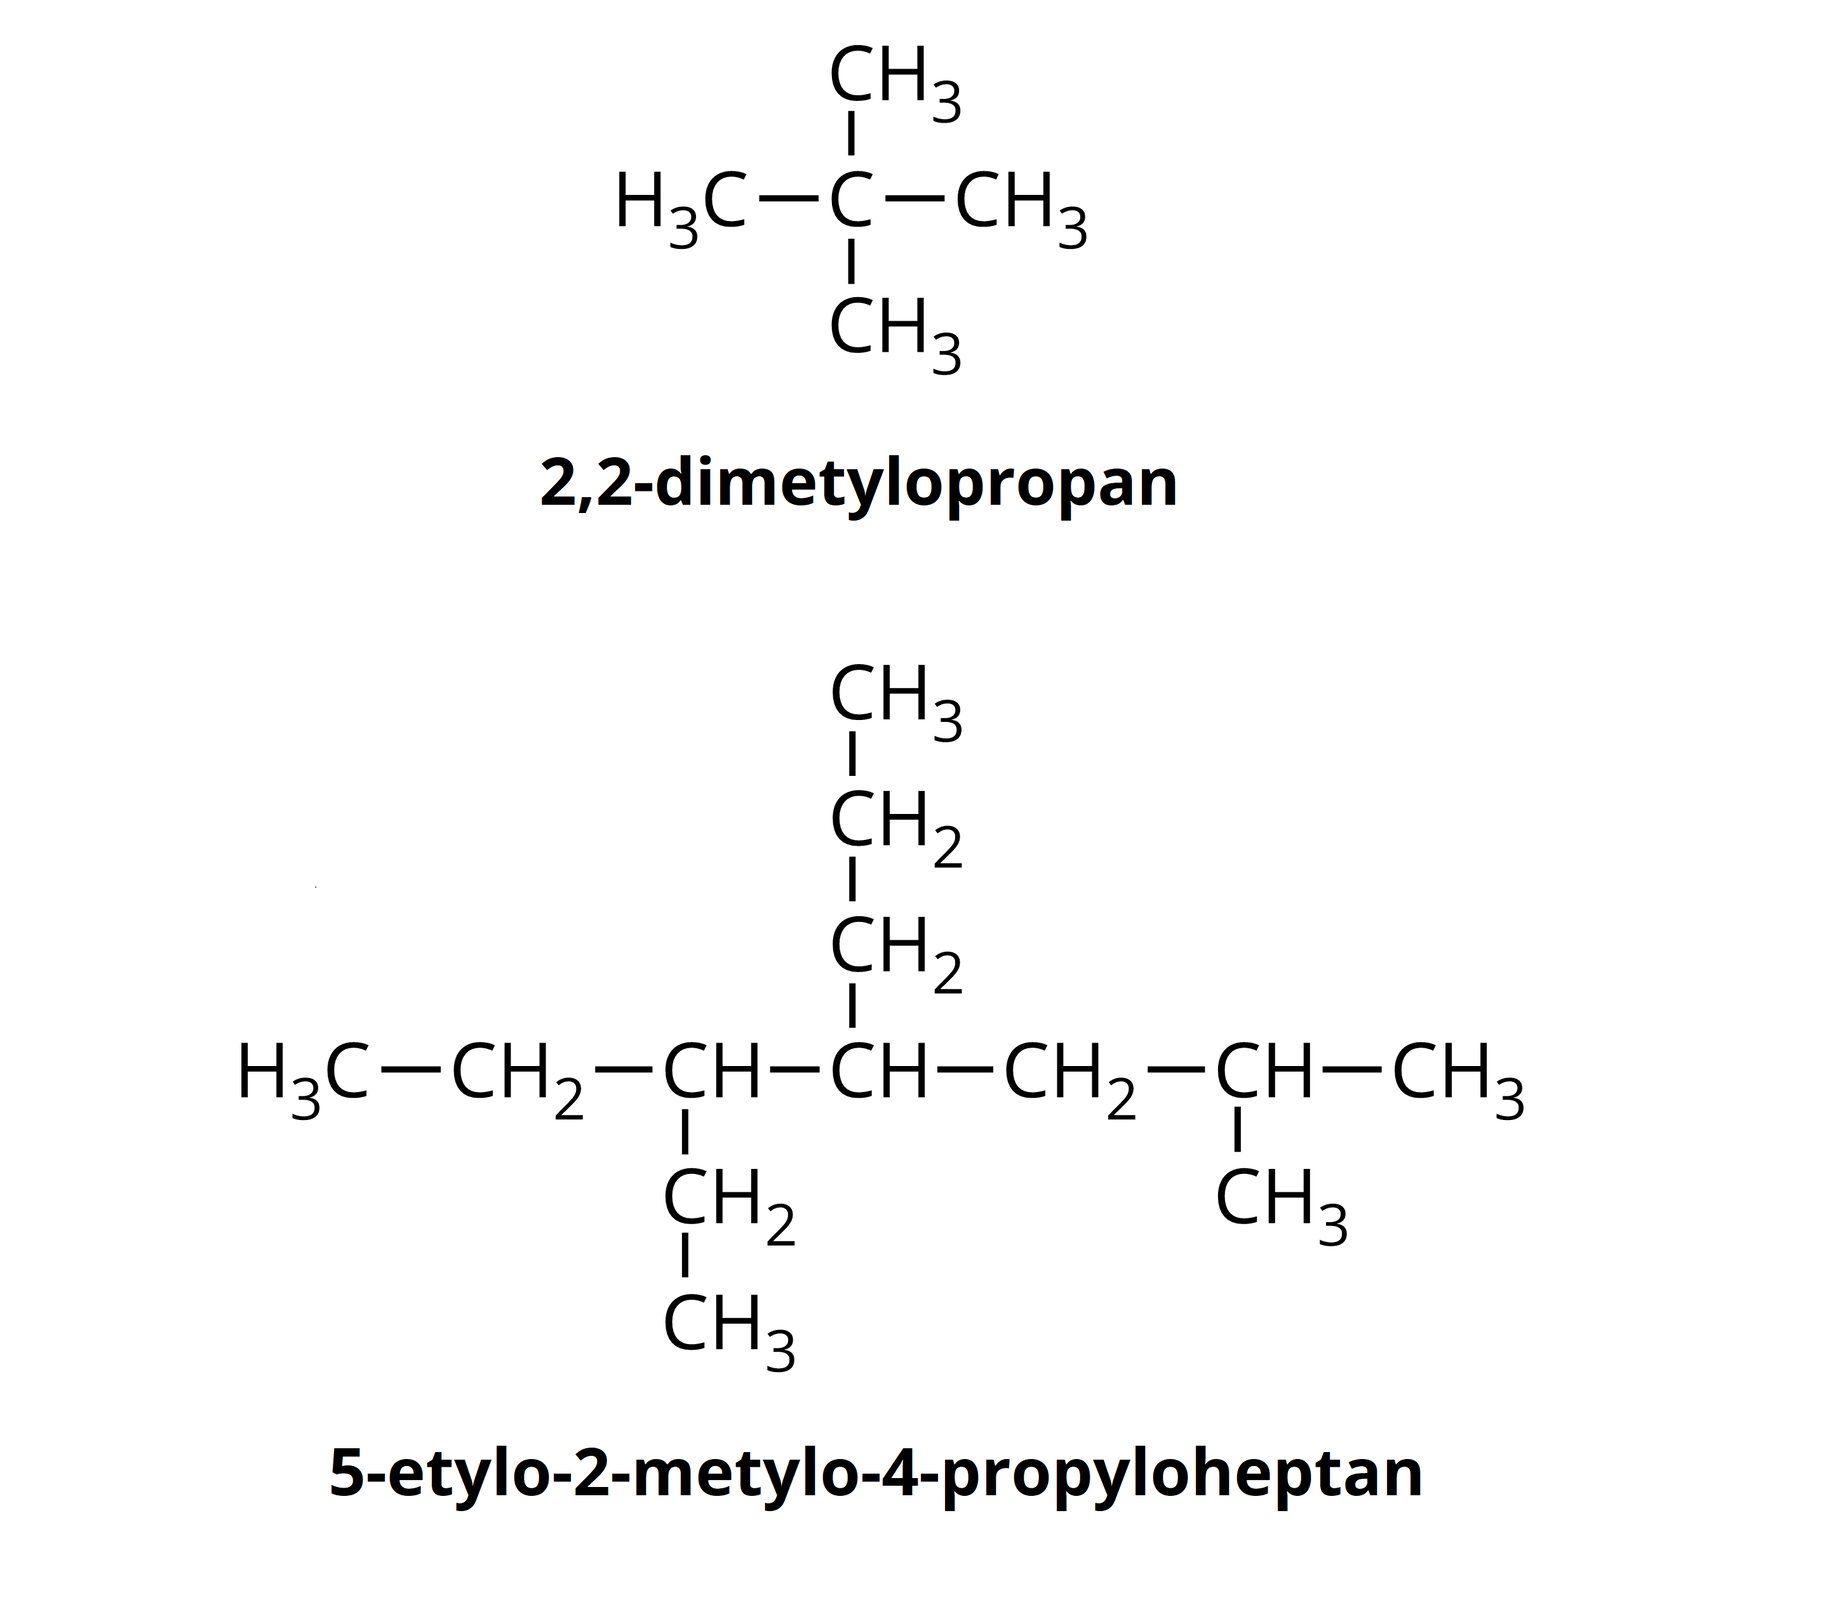 Ilustracja przedstawia wzory półstrukturalne 2,2-dimetylopropanu i 5-etylo-2-metylo-4-propyliheptanu. Budowa 2,2-dimetylopropanu: jeden atom węgla C w centrum cząsteczki i cztery grupy CH3 przyłączone do tego atomu każdy pod kątem 90 stopni. Budowa 5-etylo-2-metylo-4-propyliheptanu: poziomy łańcuch składa się z 7 atomów węgla a jego wzór półstrukturalny to CH3-CH2-CH-CH-CH2-CH-CH3. Do drugiego od prawej atomy węgla przyłączono w dół grupę CH3, do czwartego od prawej przyłączono łańcuch o wzorze półstrukturalnym CH2-CH2-CH3 a do piątego atomu węgla przyłączono łańcuch CH2-CH3.